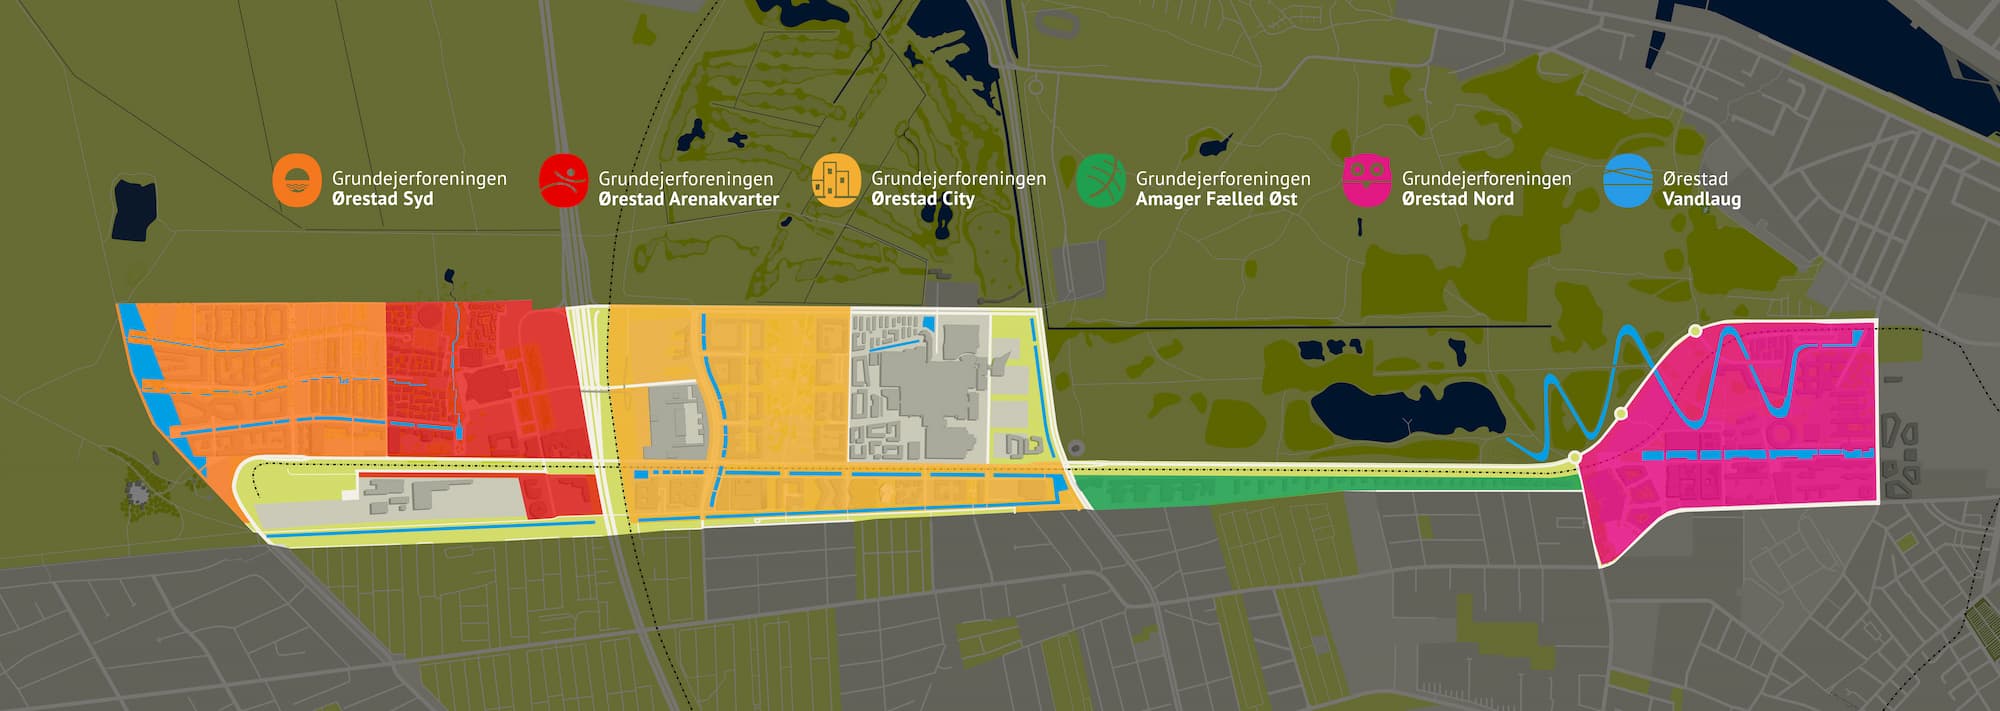 Kort over Ørestads kvarterer samt kanaler og søer anno 2024. Kortet viser derudover opdelingen af Ørestads grundejerforeninger, hvis bestyrelser har ansvaret for drift og udvikling af fællesarealerne.